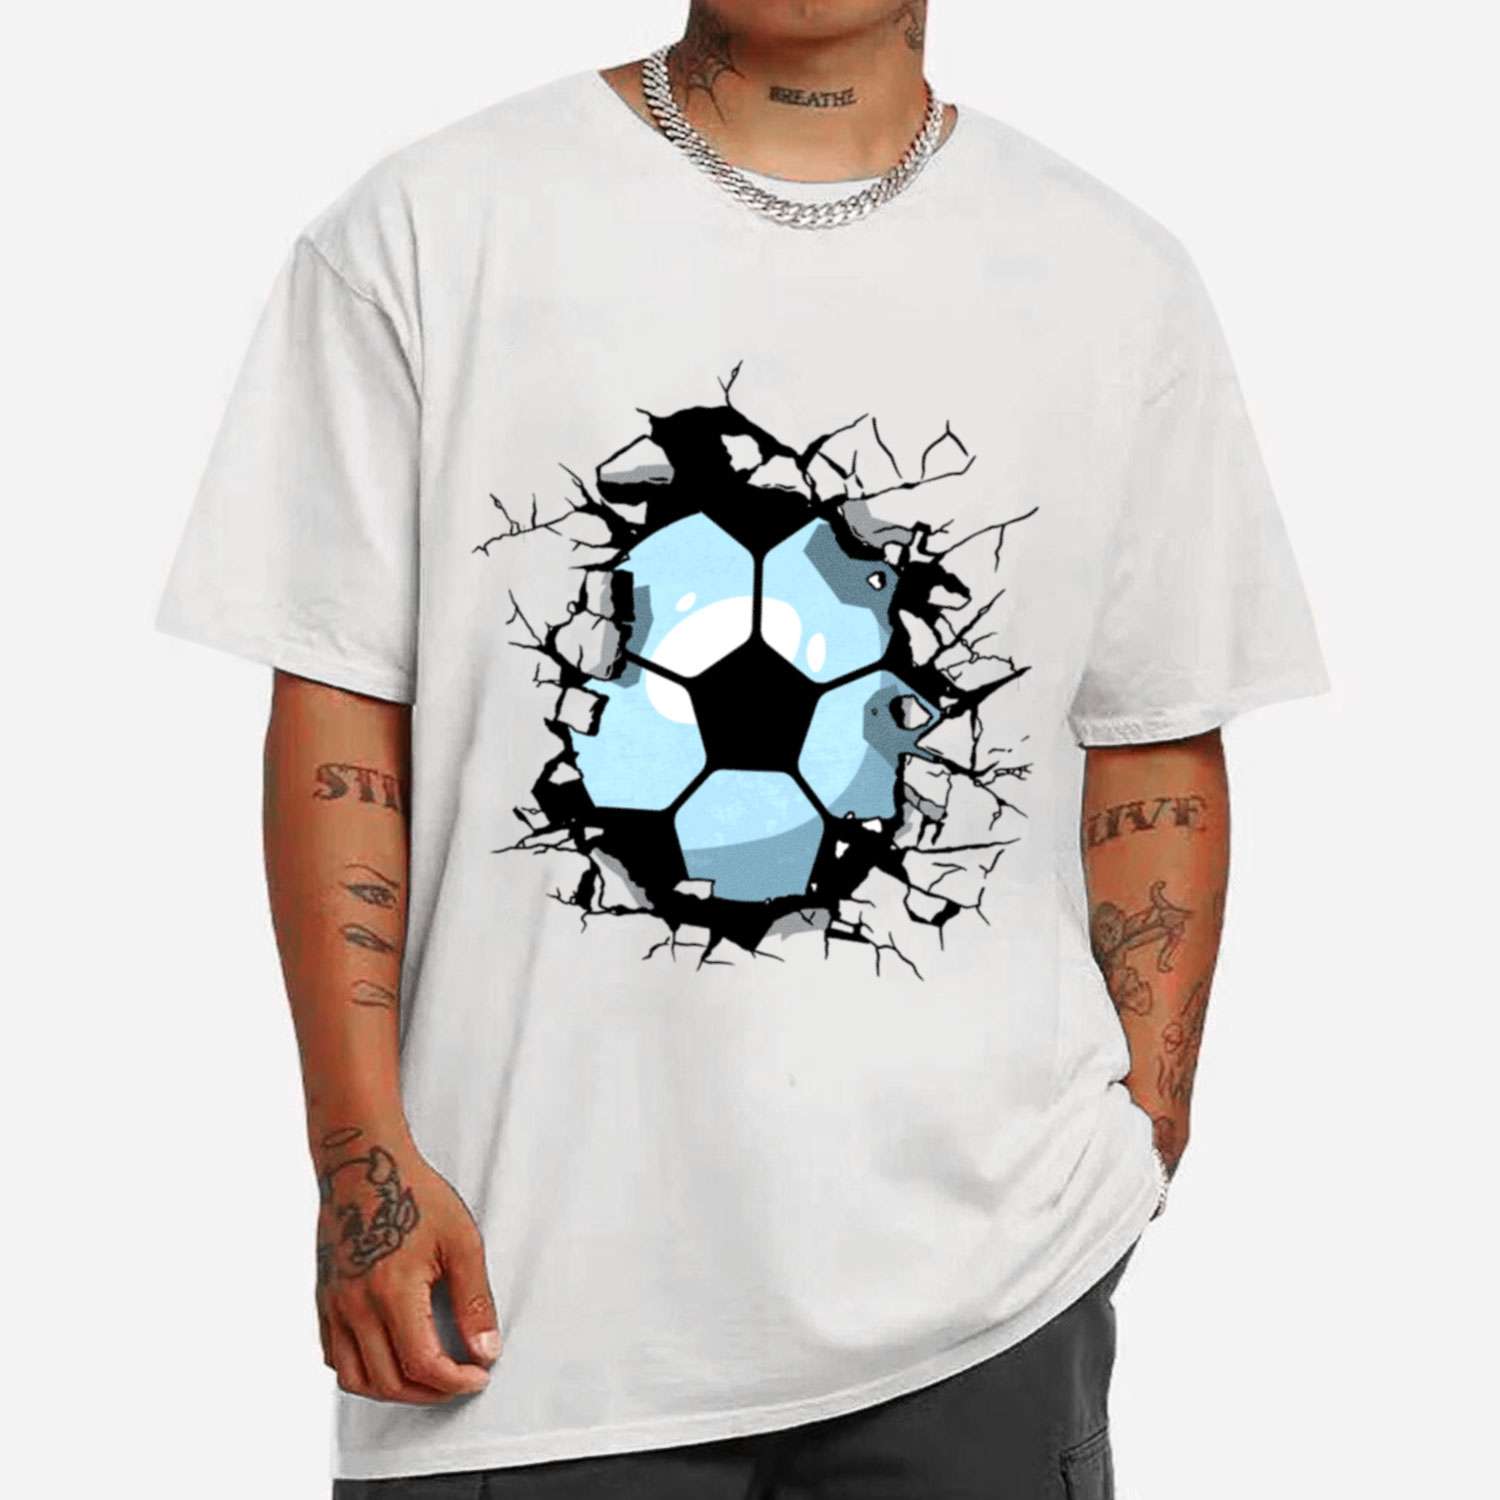 Soccer Ball Breaking Wall T-shirt